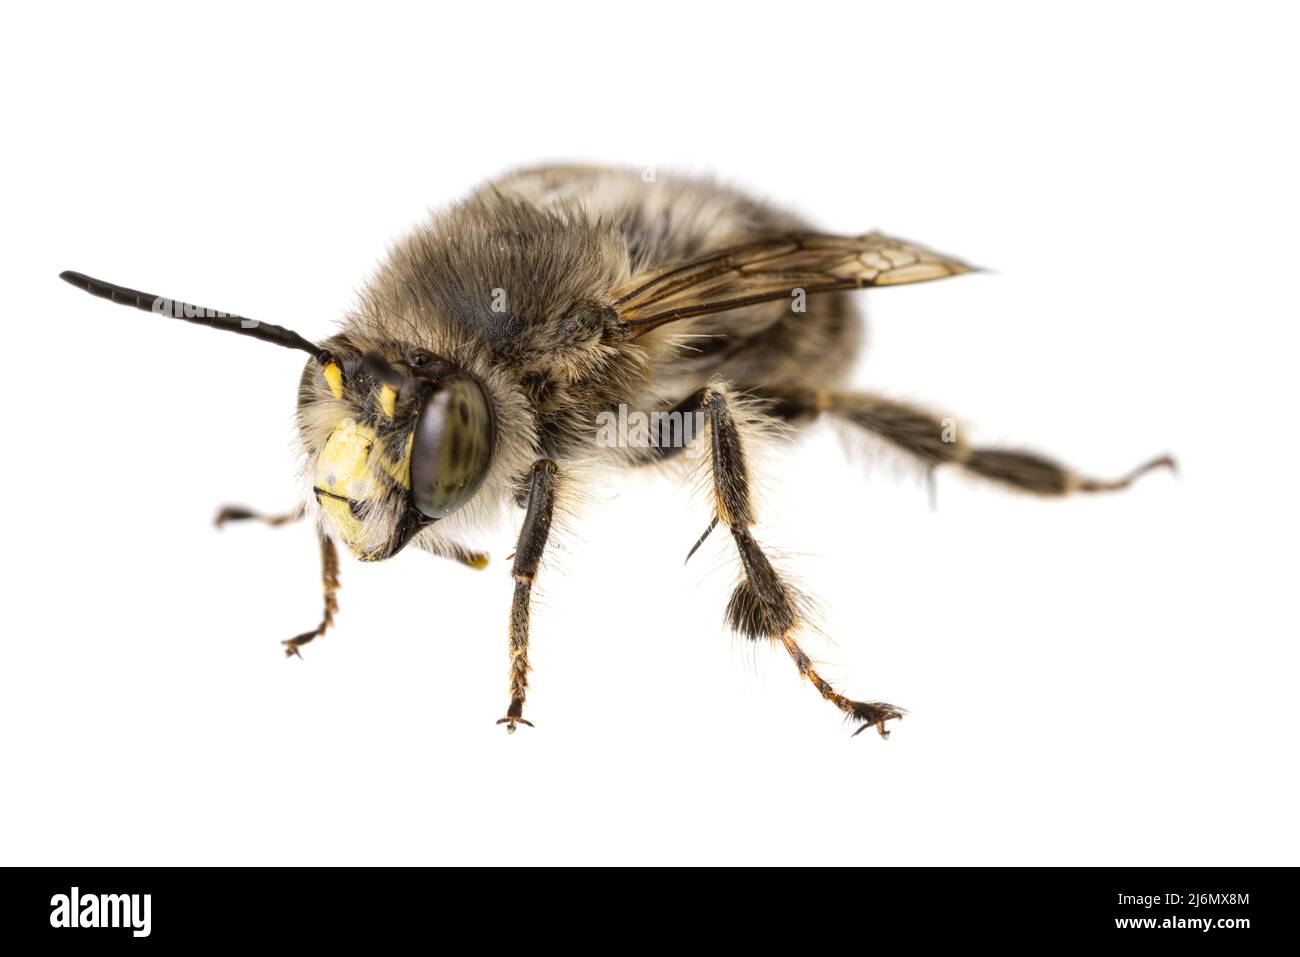 Insekten Europas - Bienen: Makro von männlichen Anthophora crinipes (Pelzbienen) isoliert auf weißem Hintergrund - Vorderansicht Stockfoto